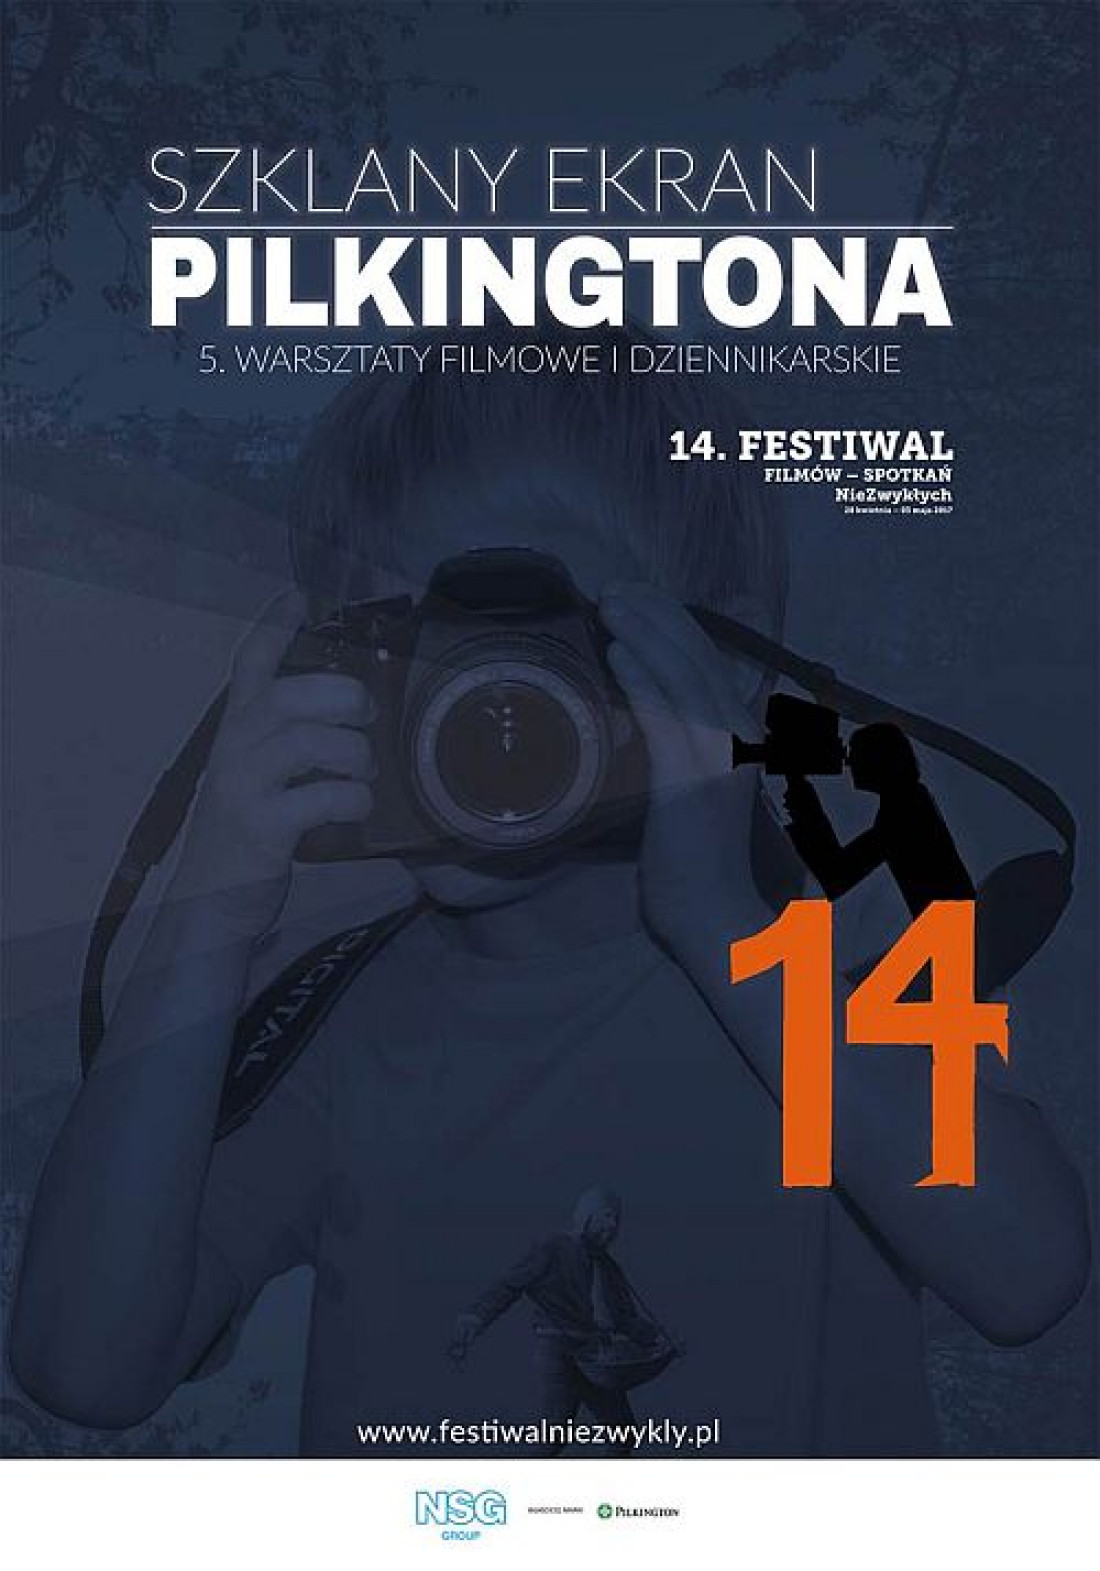 Ruszają kolejne warsztaty filmowo - dziennikarskie "Szklany ekran Pilkingtona"